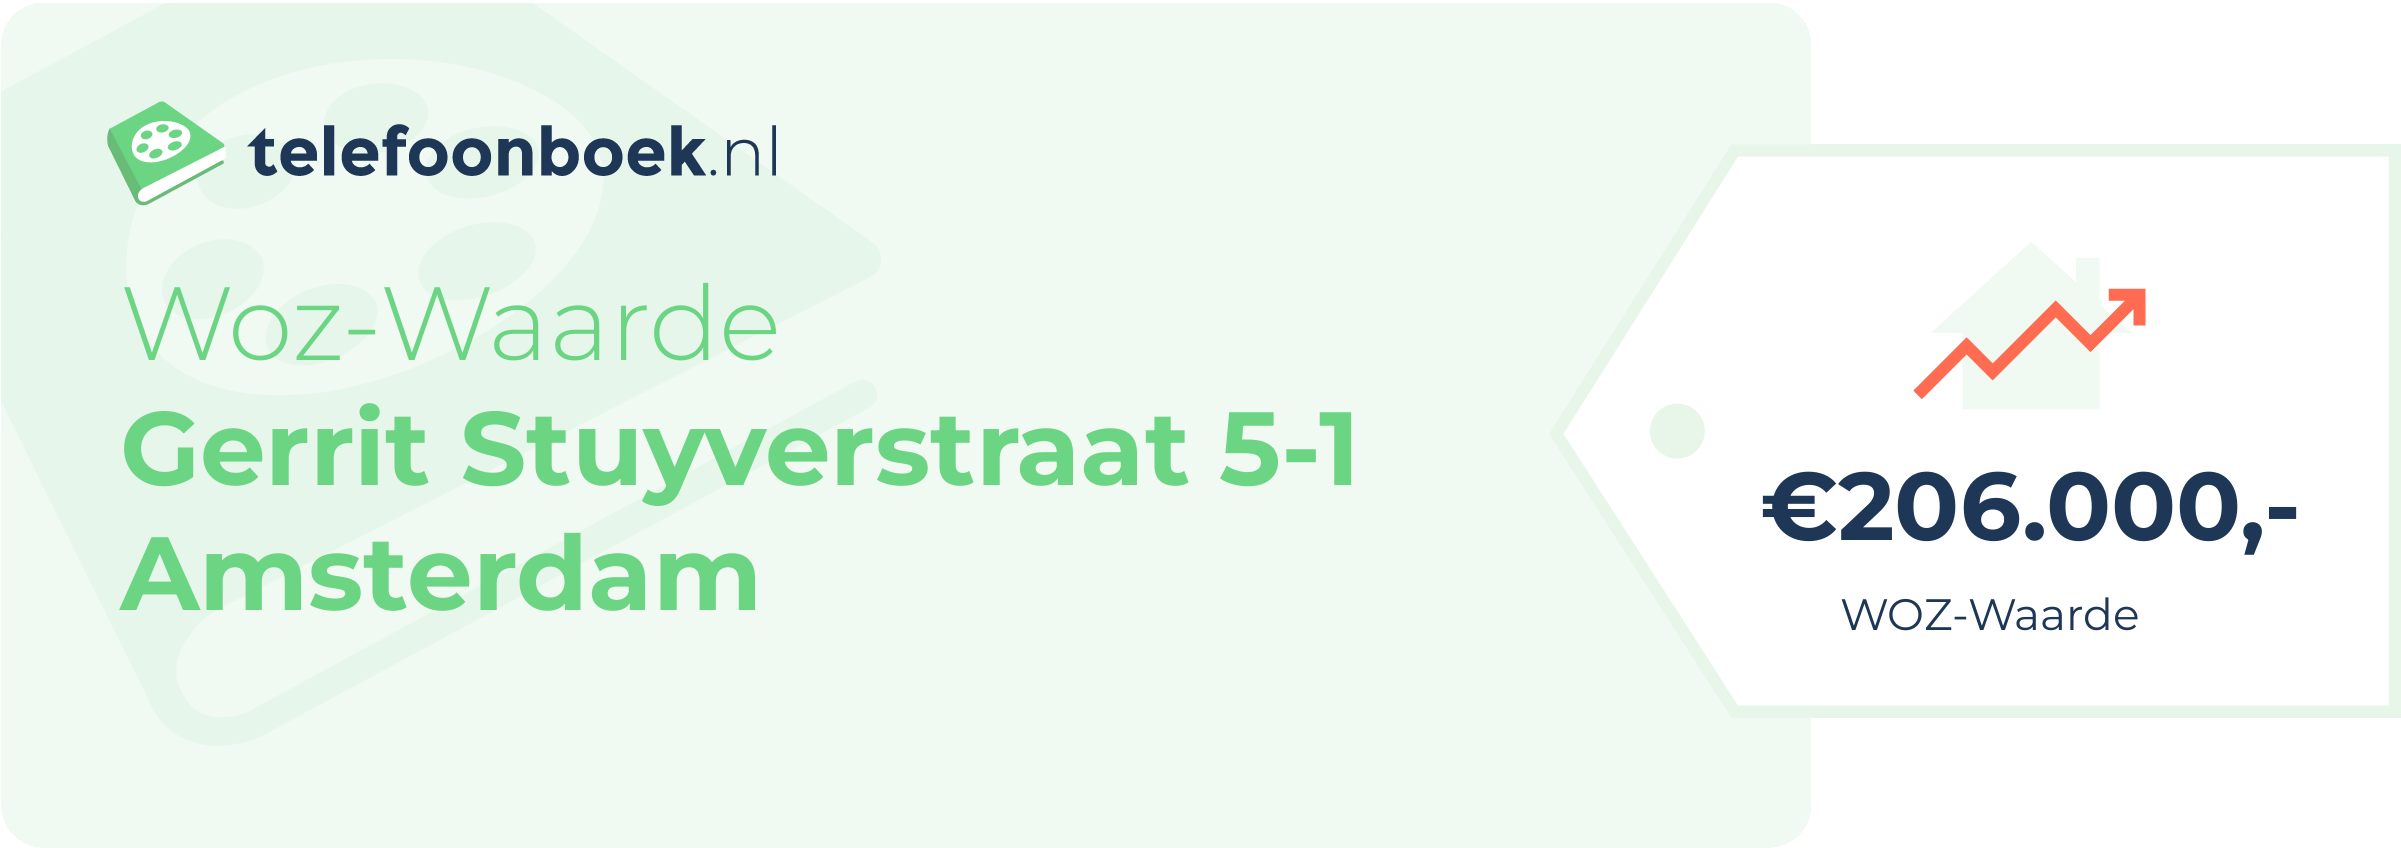 WOZ-waarde Gerrit Stuyverstraat 5-1 Amsterdam